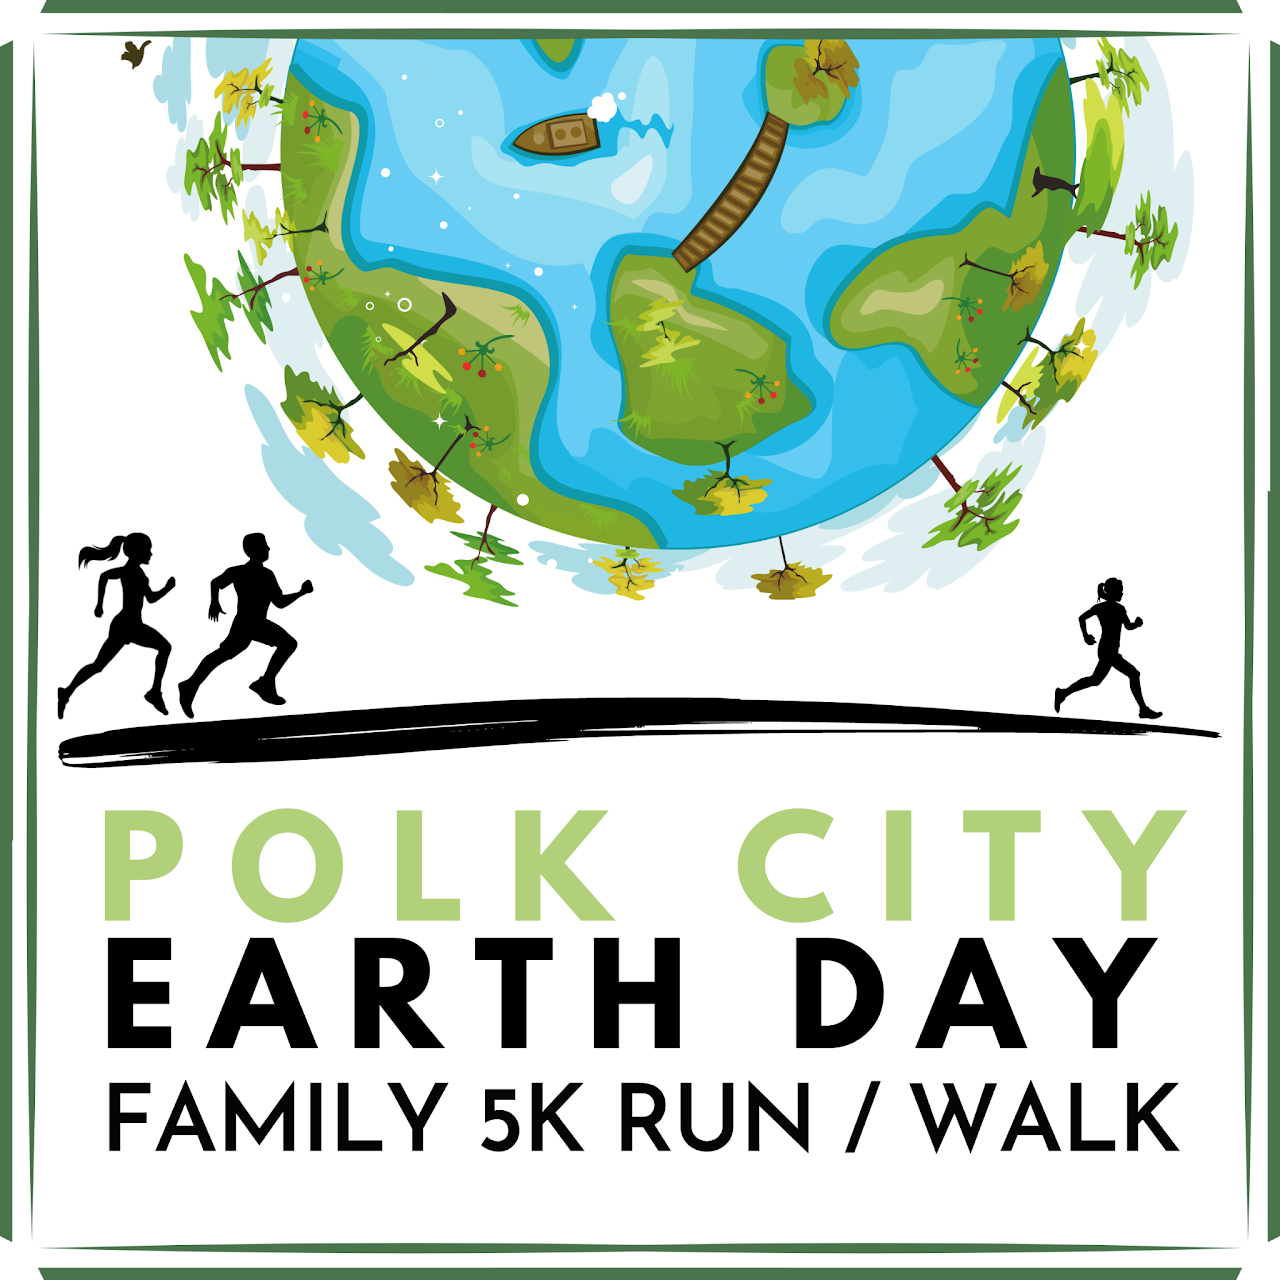 Polk City Earth Day 5K logo on RaceRaves